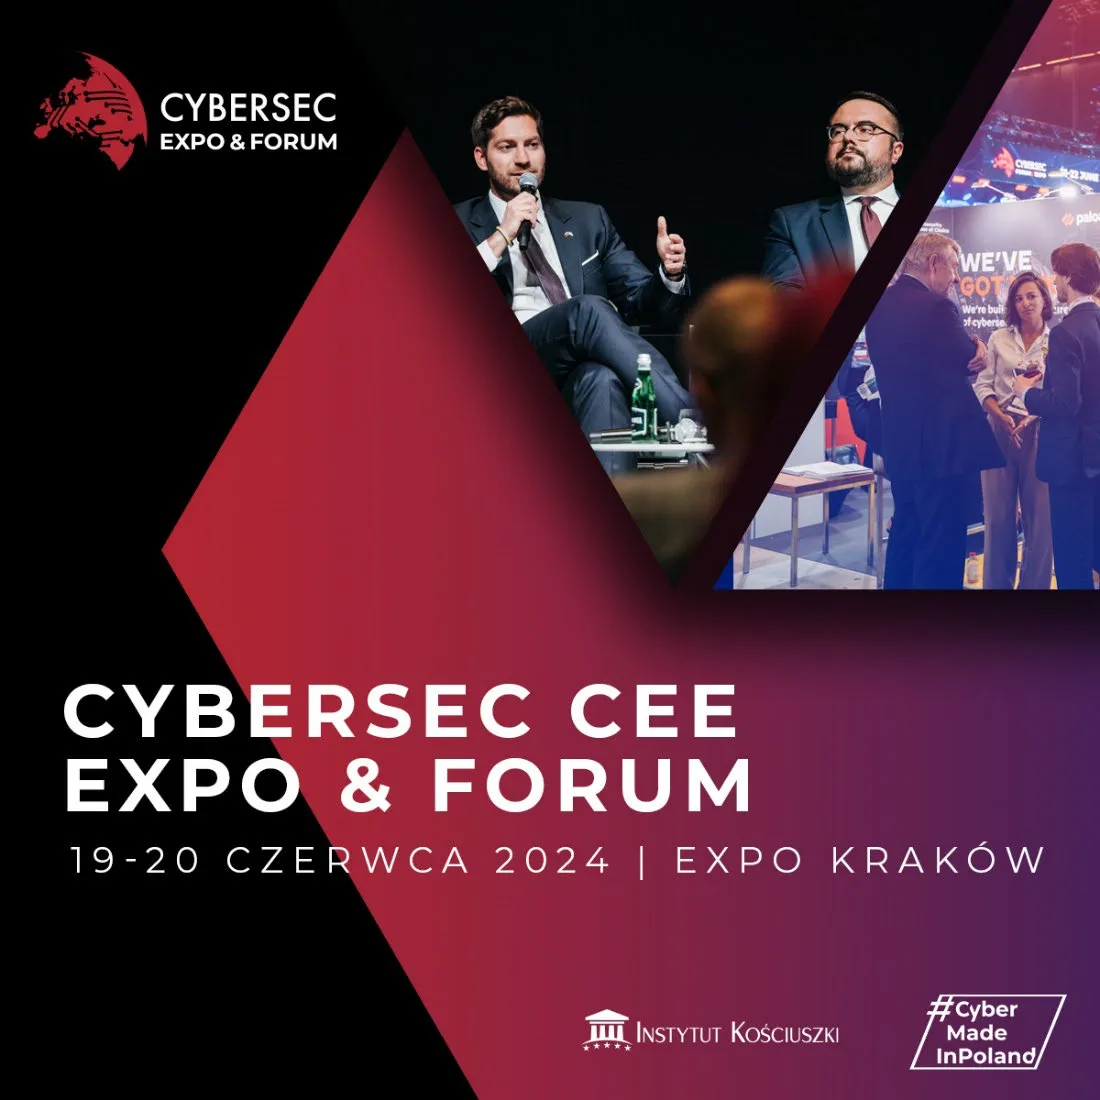 CyberSec Cee Expo and Forum. Expo Kraków 19-20 czerwca.